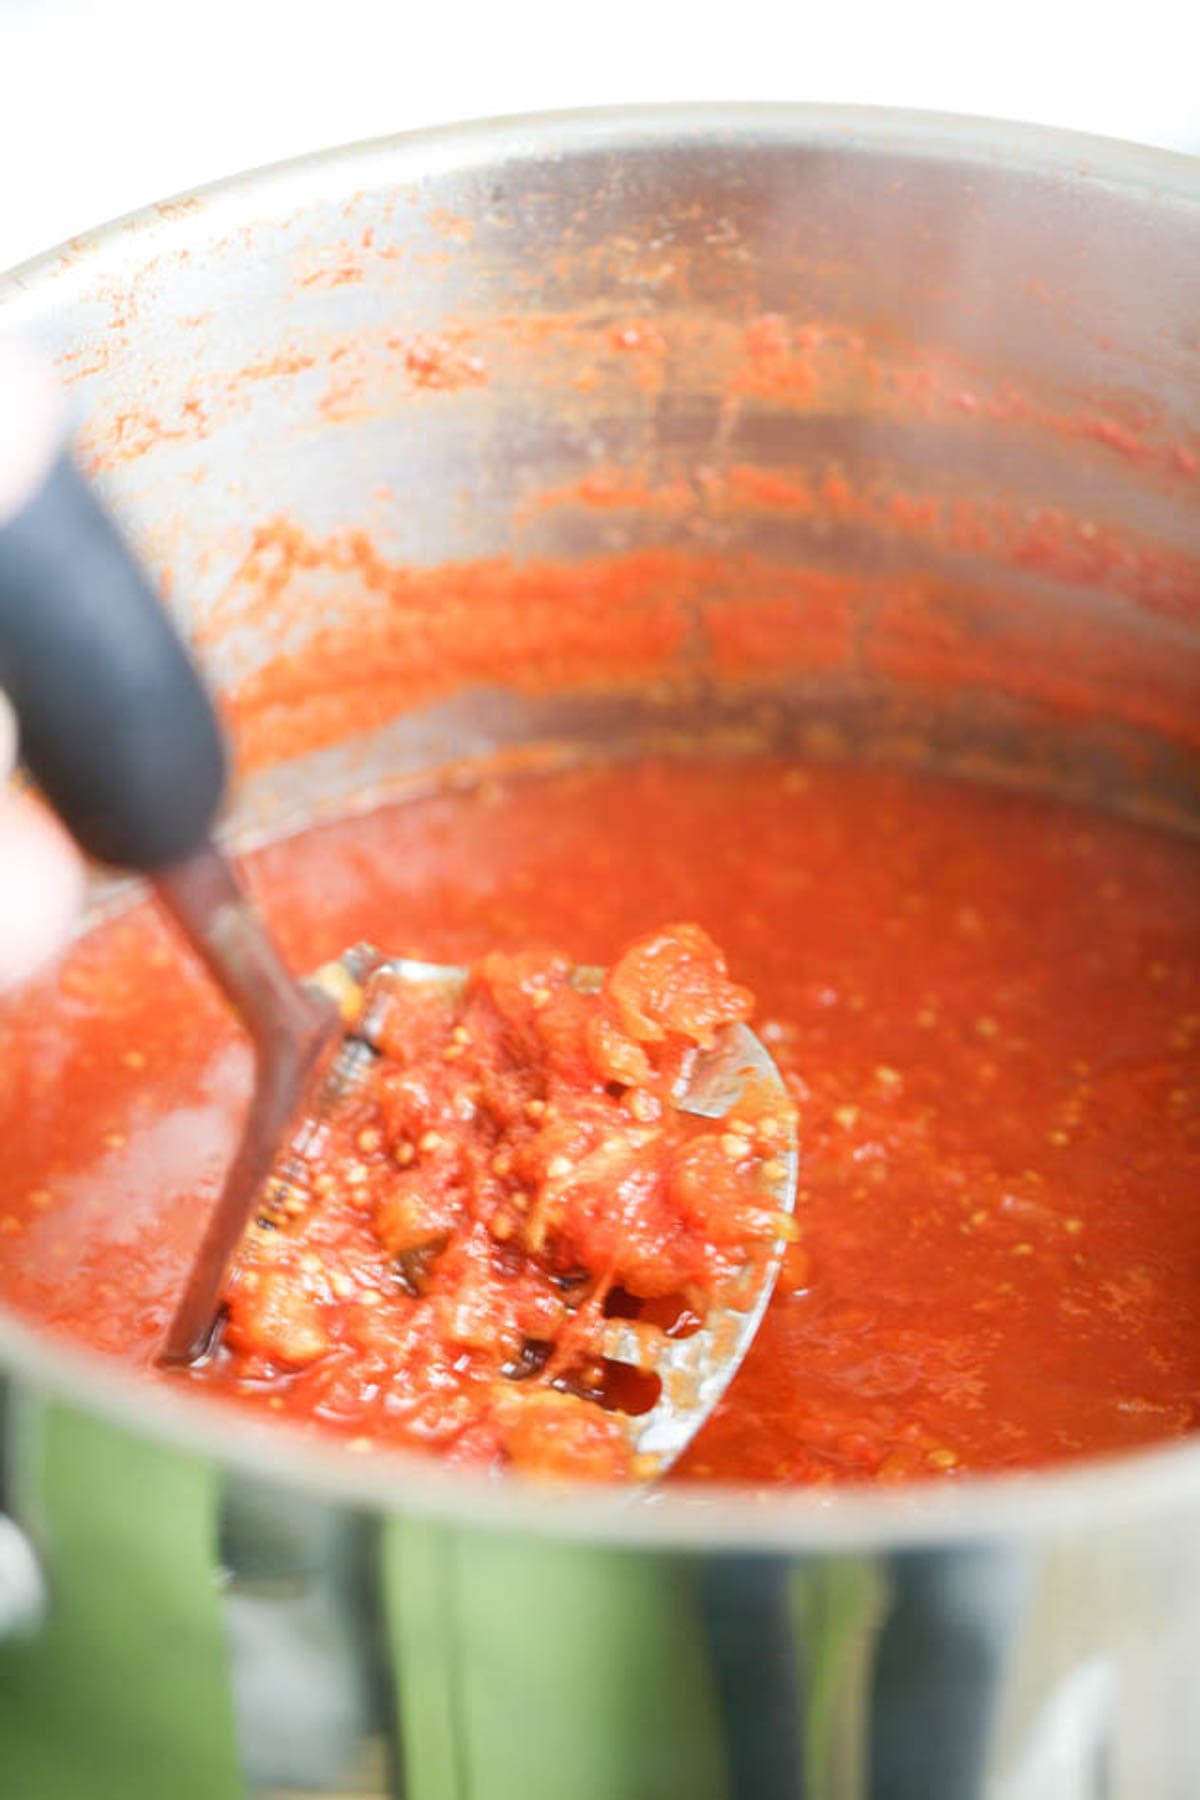 mashing tomatoes before canning.